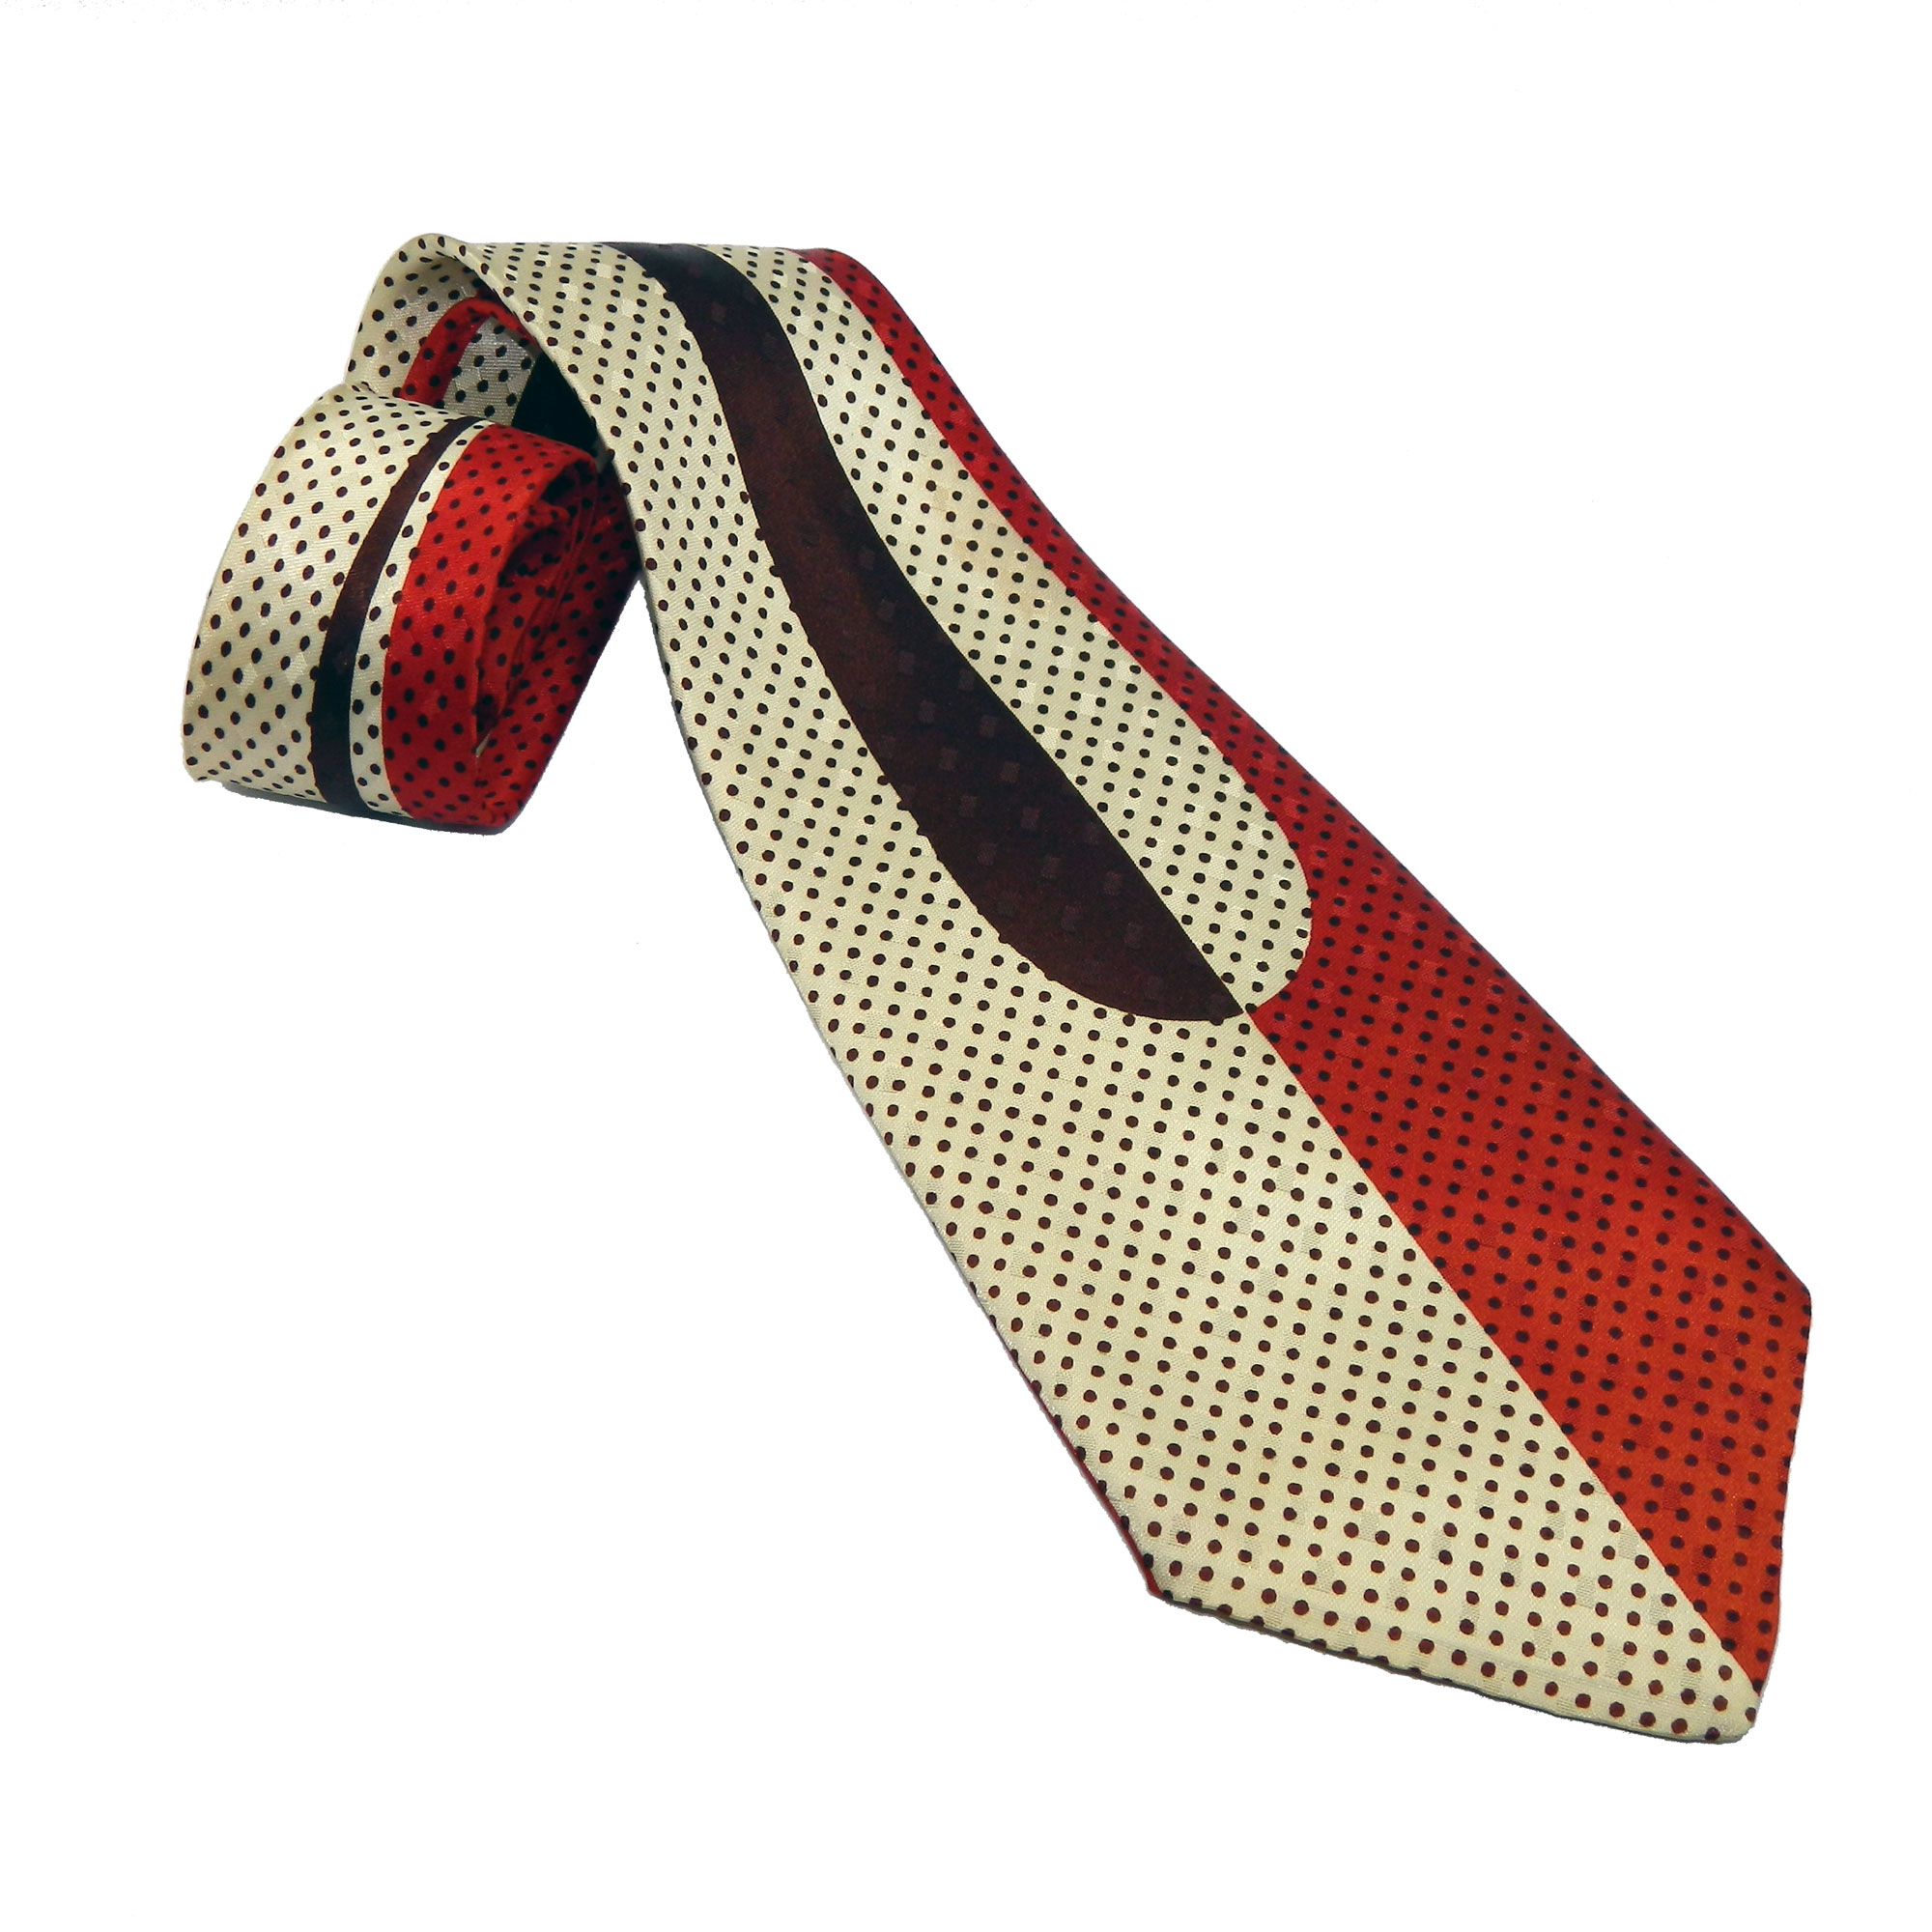 1940s Art Deco tie